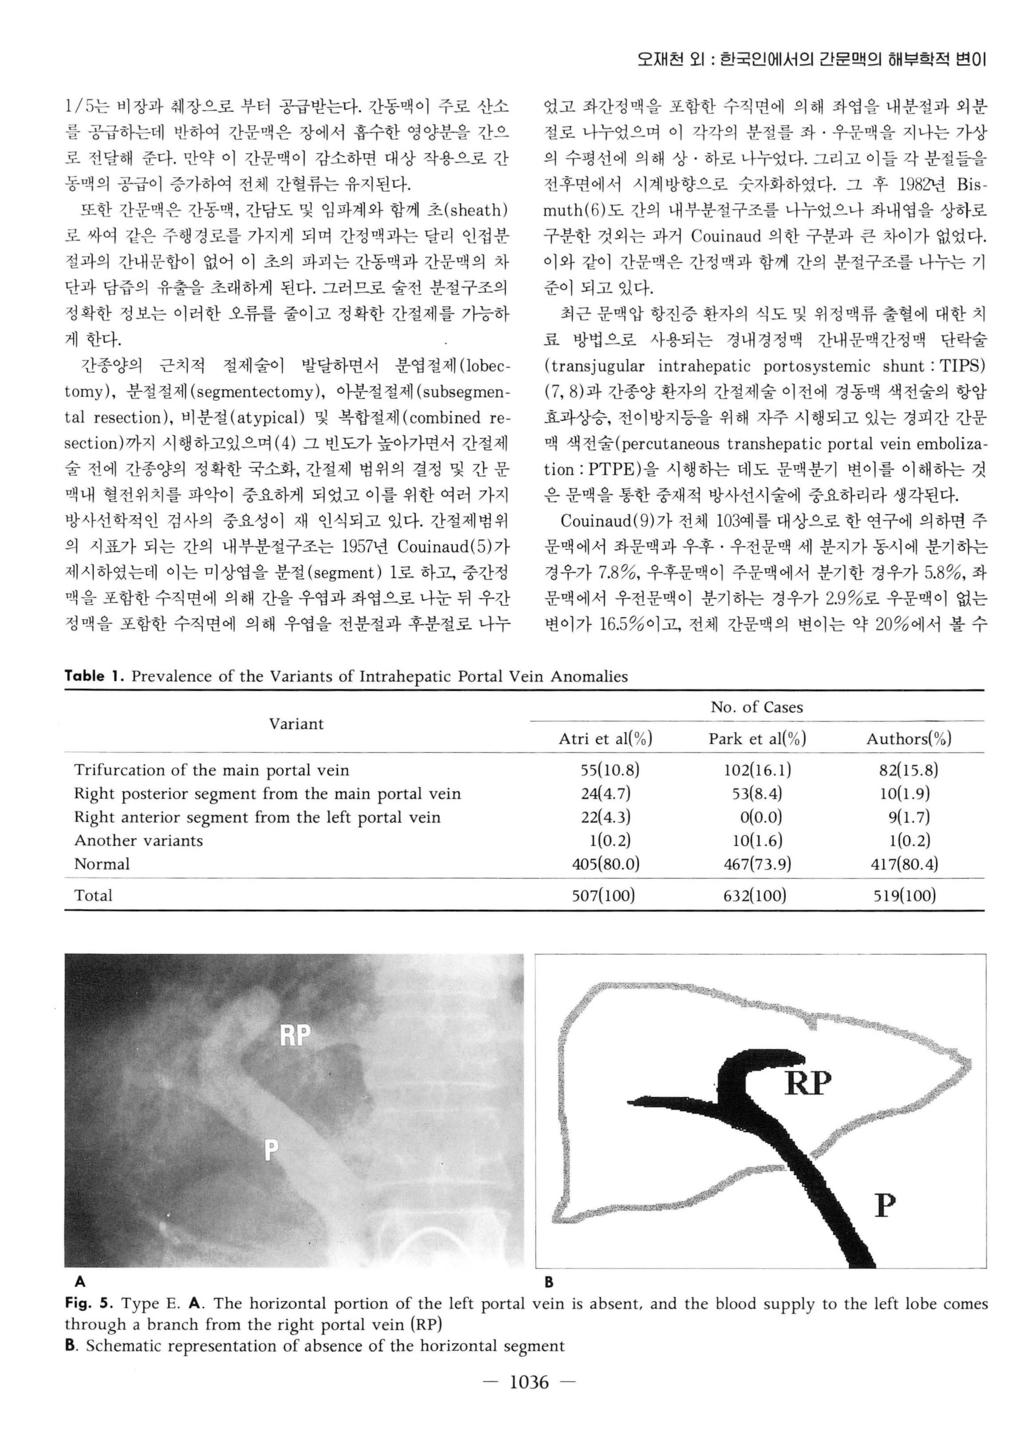 오재천오 1: 한국인에서의간문맥의해부학적변이 1/ 5는비장과훼장으로부터공급받는다. 간동맥이주로산소를공급하는데반하여간문맥은장에서흡수한영양분을간으로전달해준다.